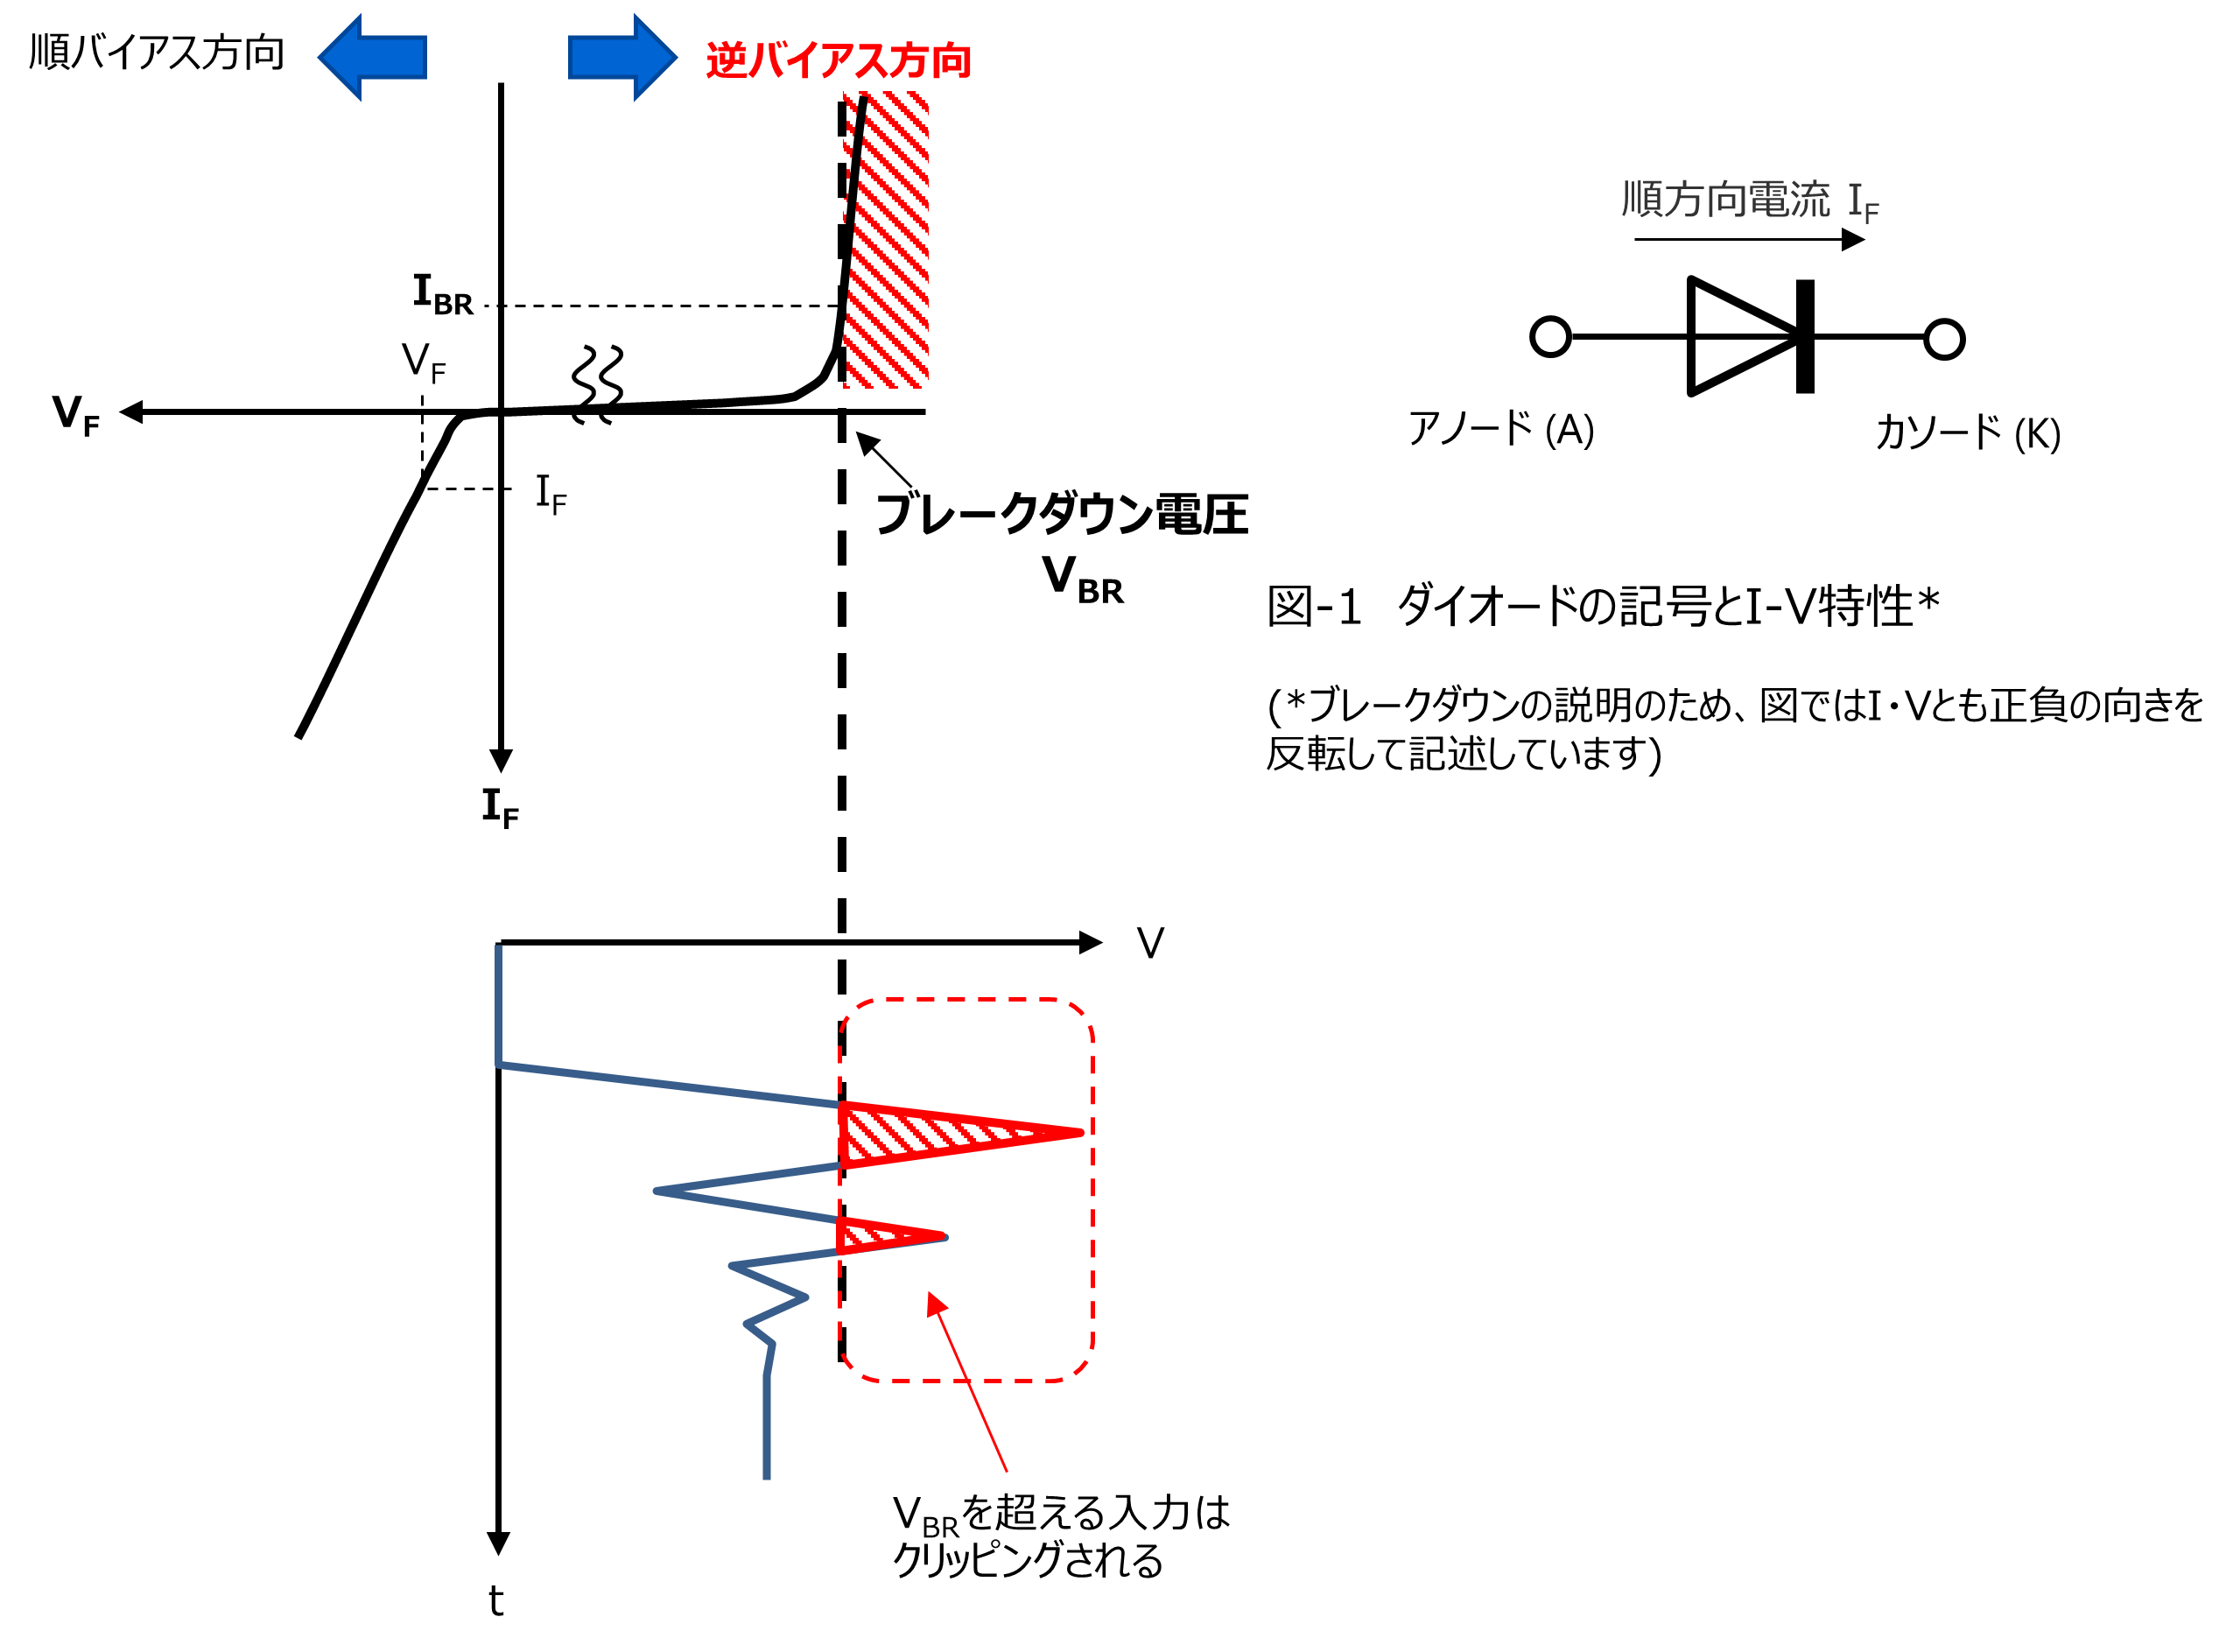 図-1　ダイオードの記号とI-V特性、図-2　ブレークダウン電圧を超える入力